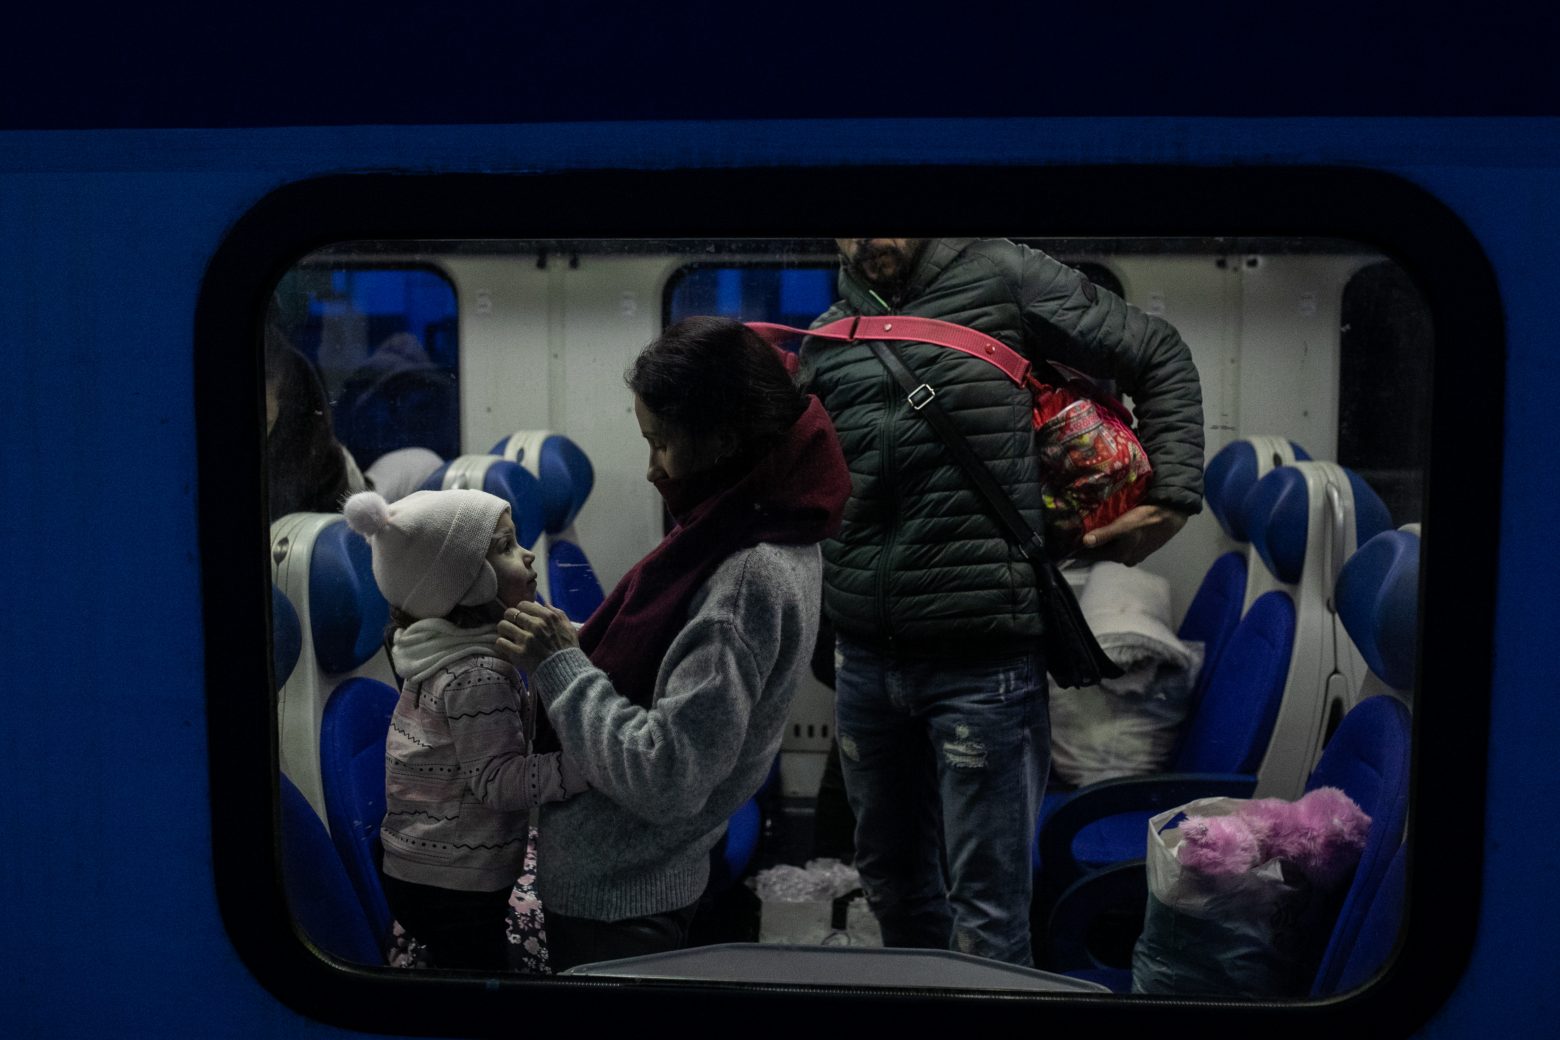 Ουκρανία: Τρίτη δομή φιλοξενίας για τους πρόσφυγες ανοίγει στην Ελλάδα